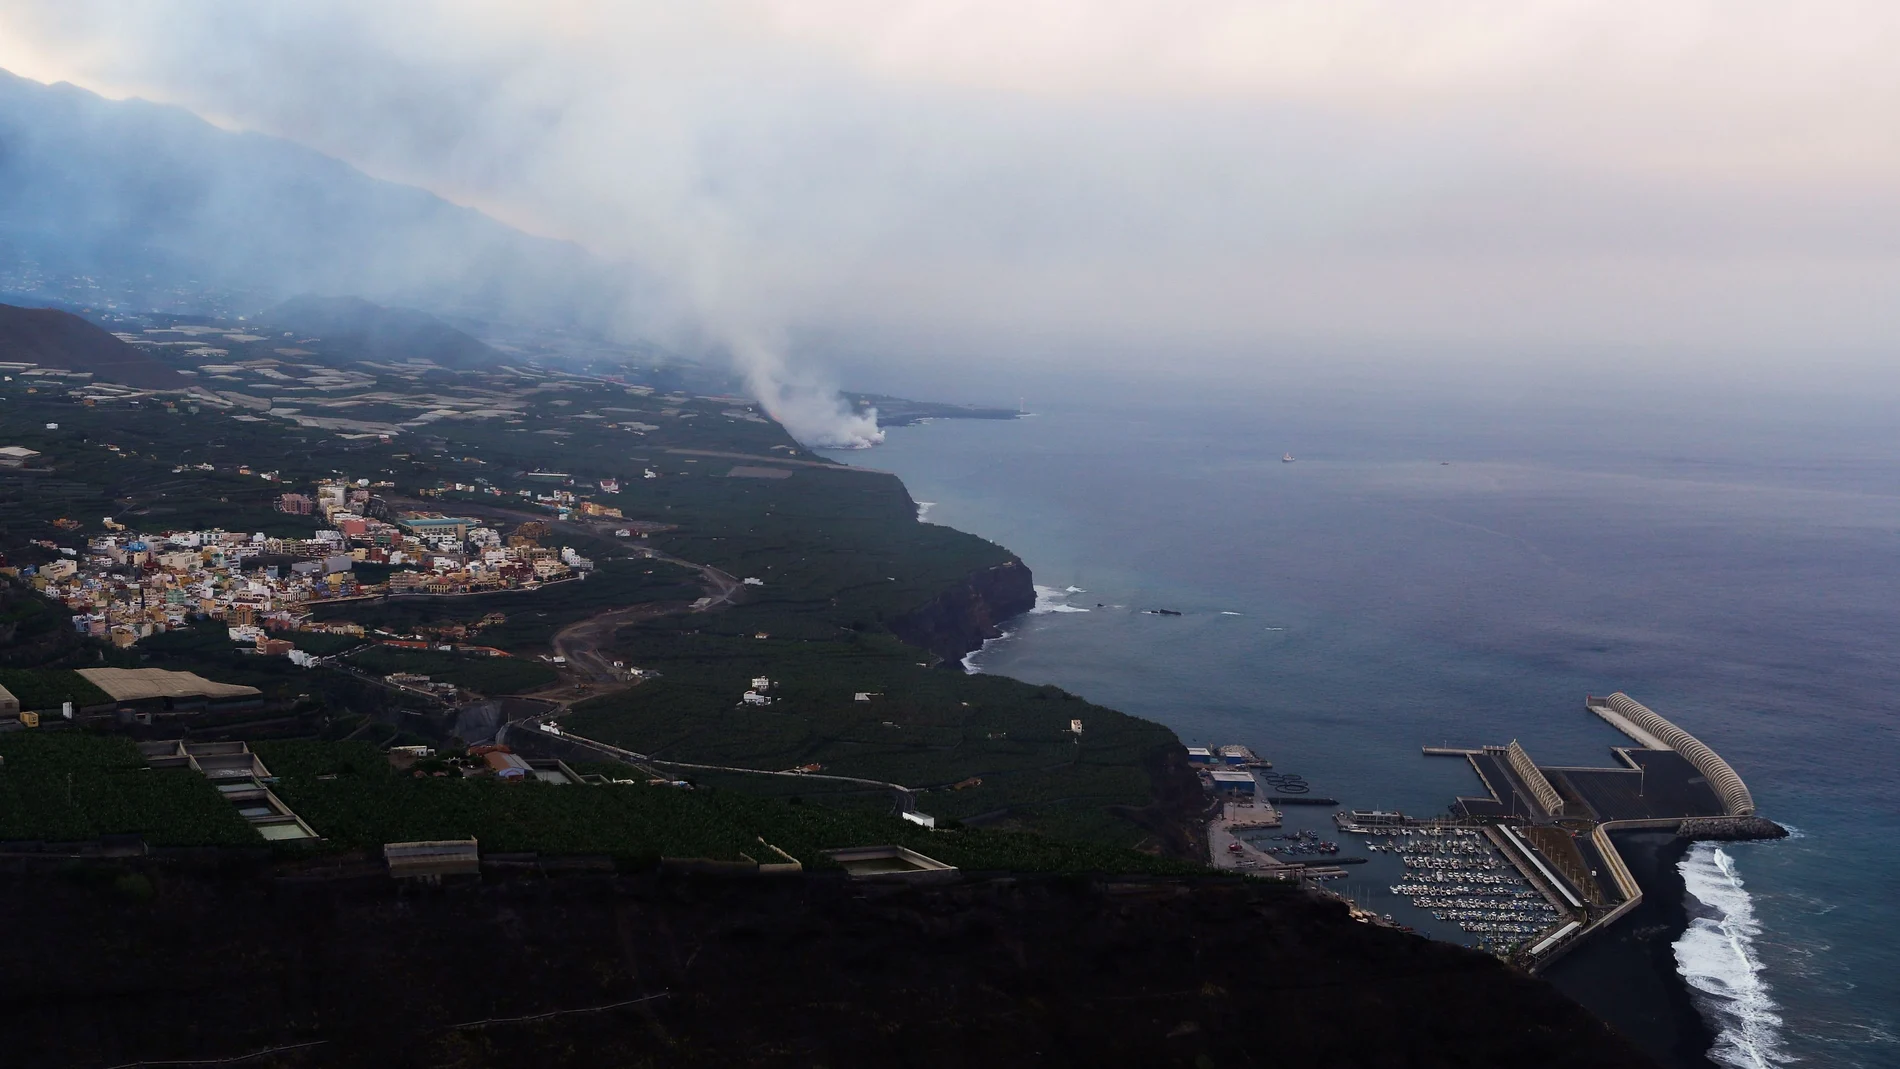 La lava llega al mar al décimo día de erupción en La Palma